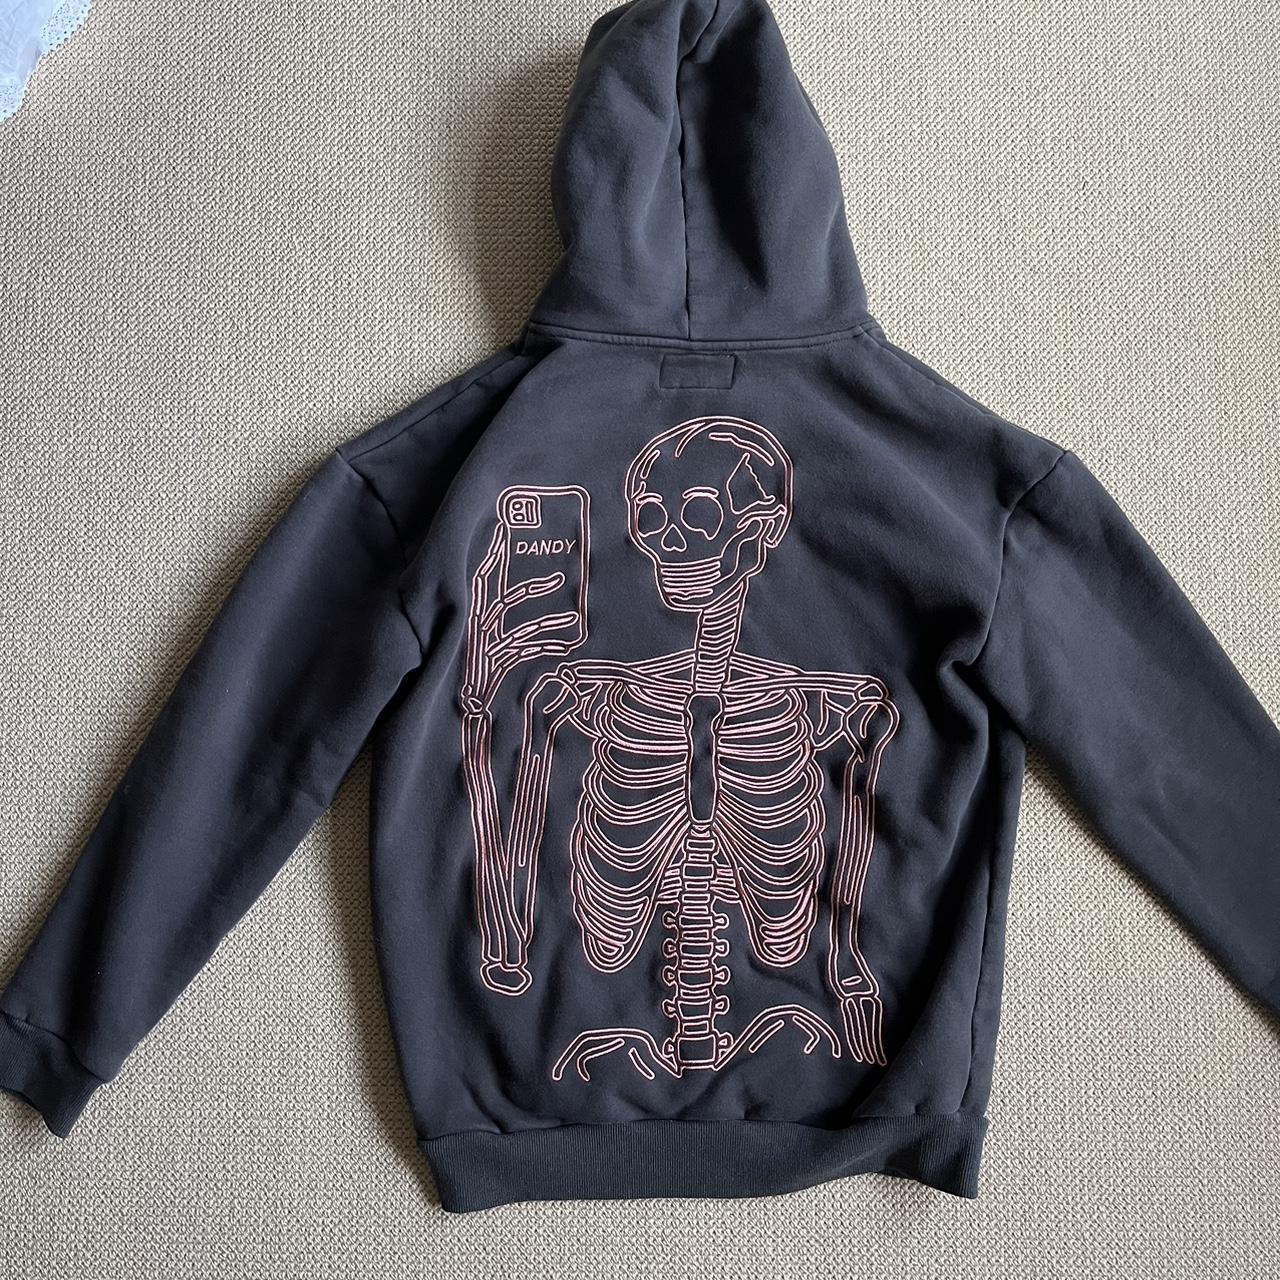 Dandy worldwide skeleton hoodie Perfect condition... - Depop